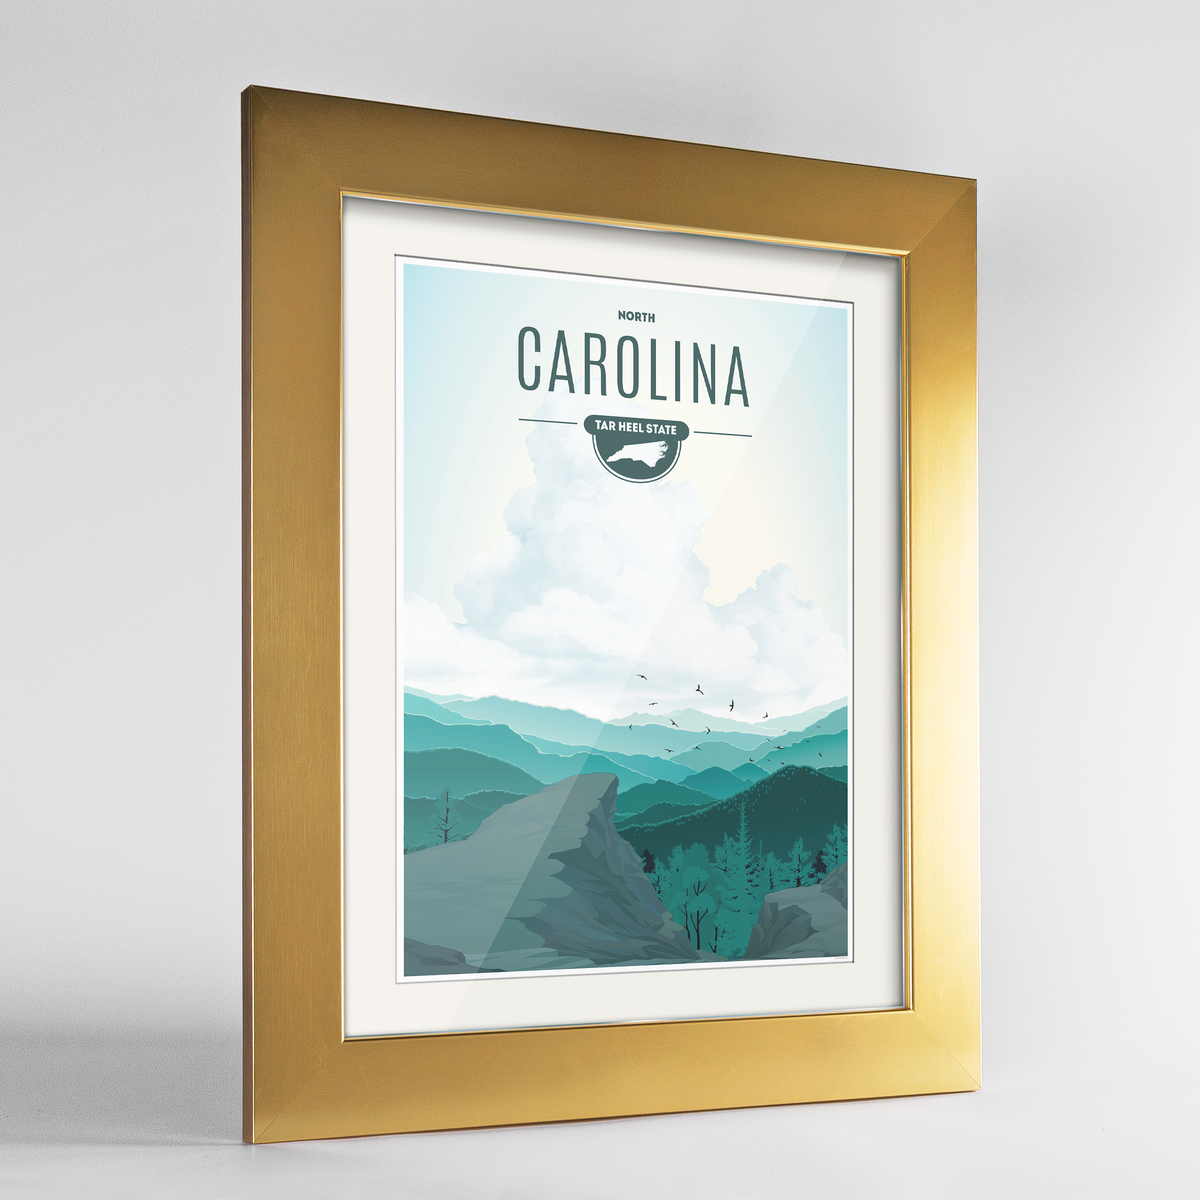 North Carolina State Frame Print